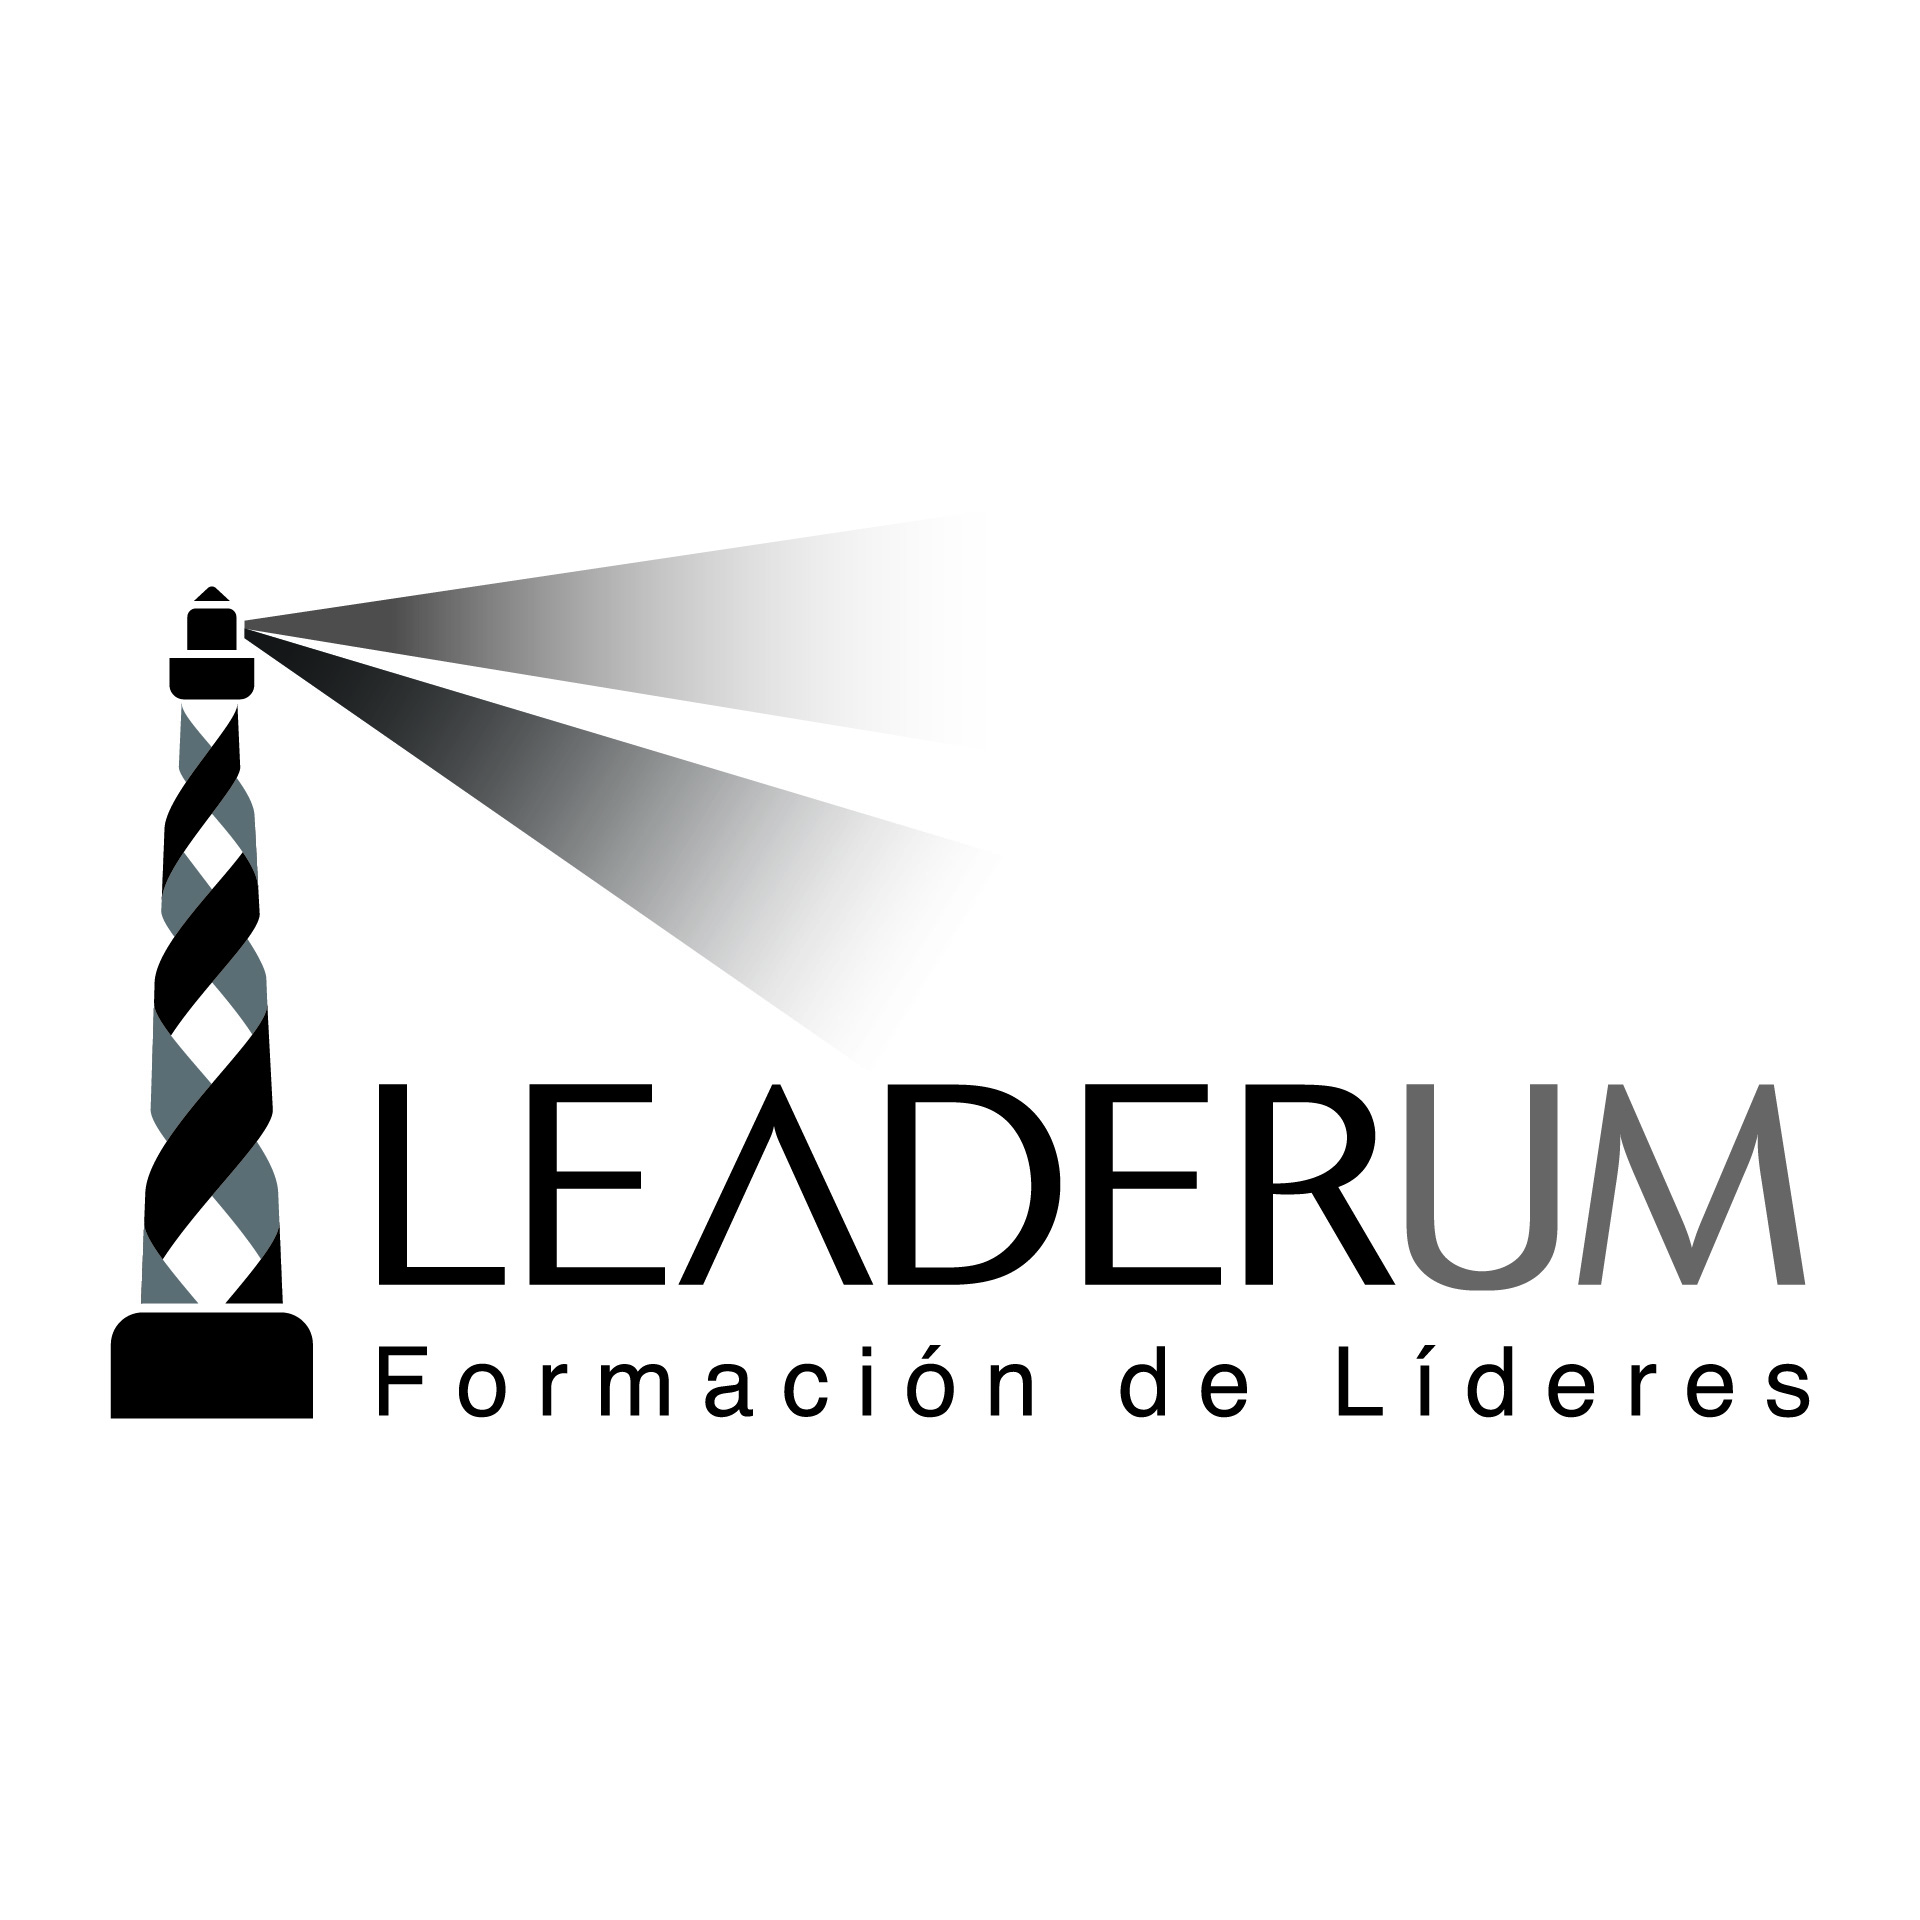 Diseño de Identidad Visual y Logotipo para la marca Leaderum